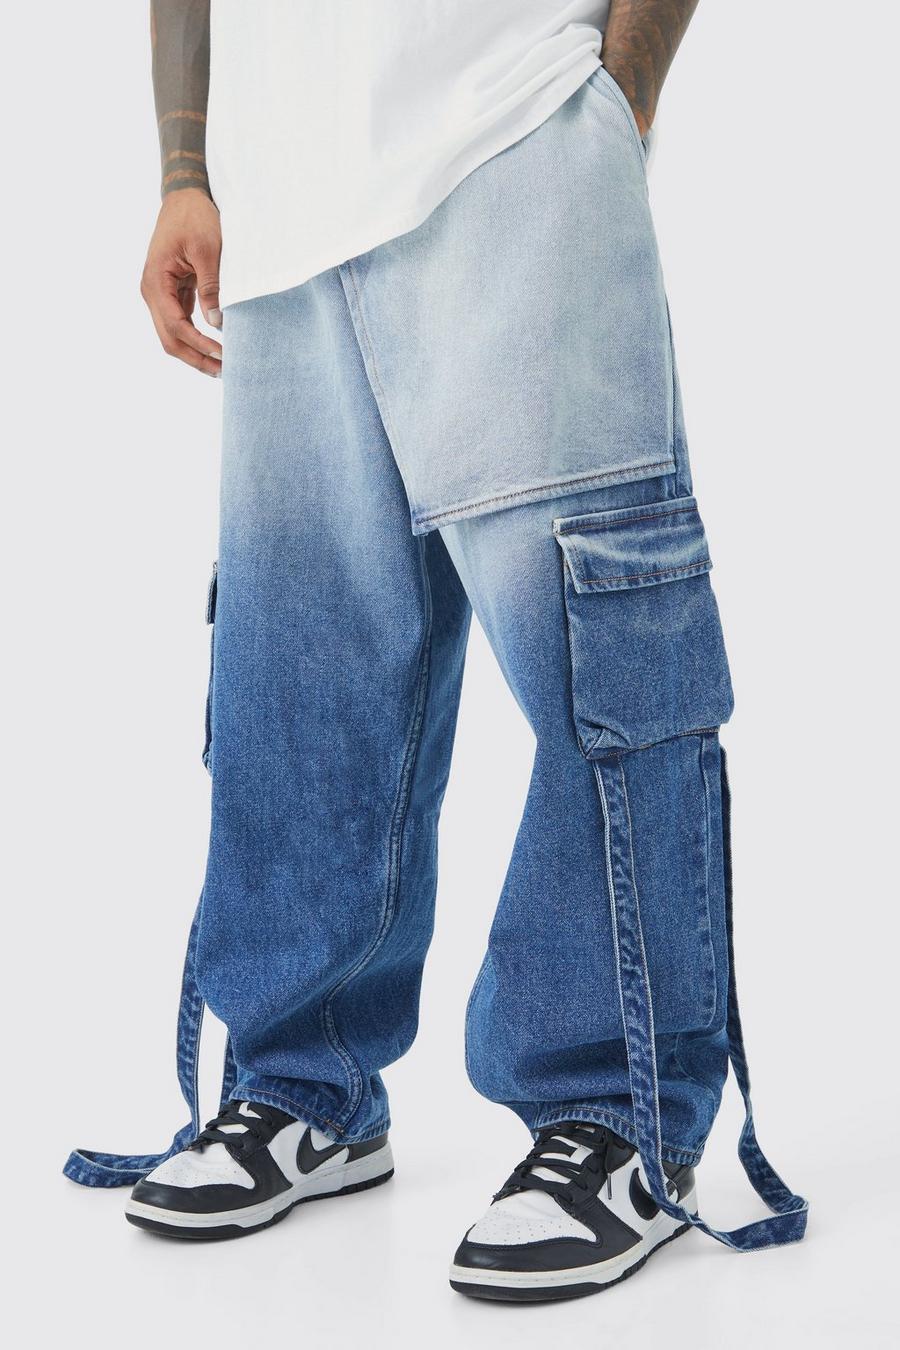 Lockere Jeans mit elastischem Bund und Farbverlauf, Antique wash image number 1